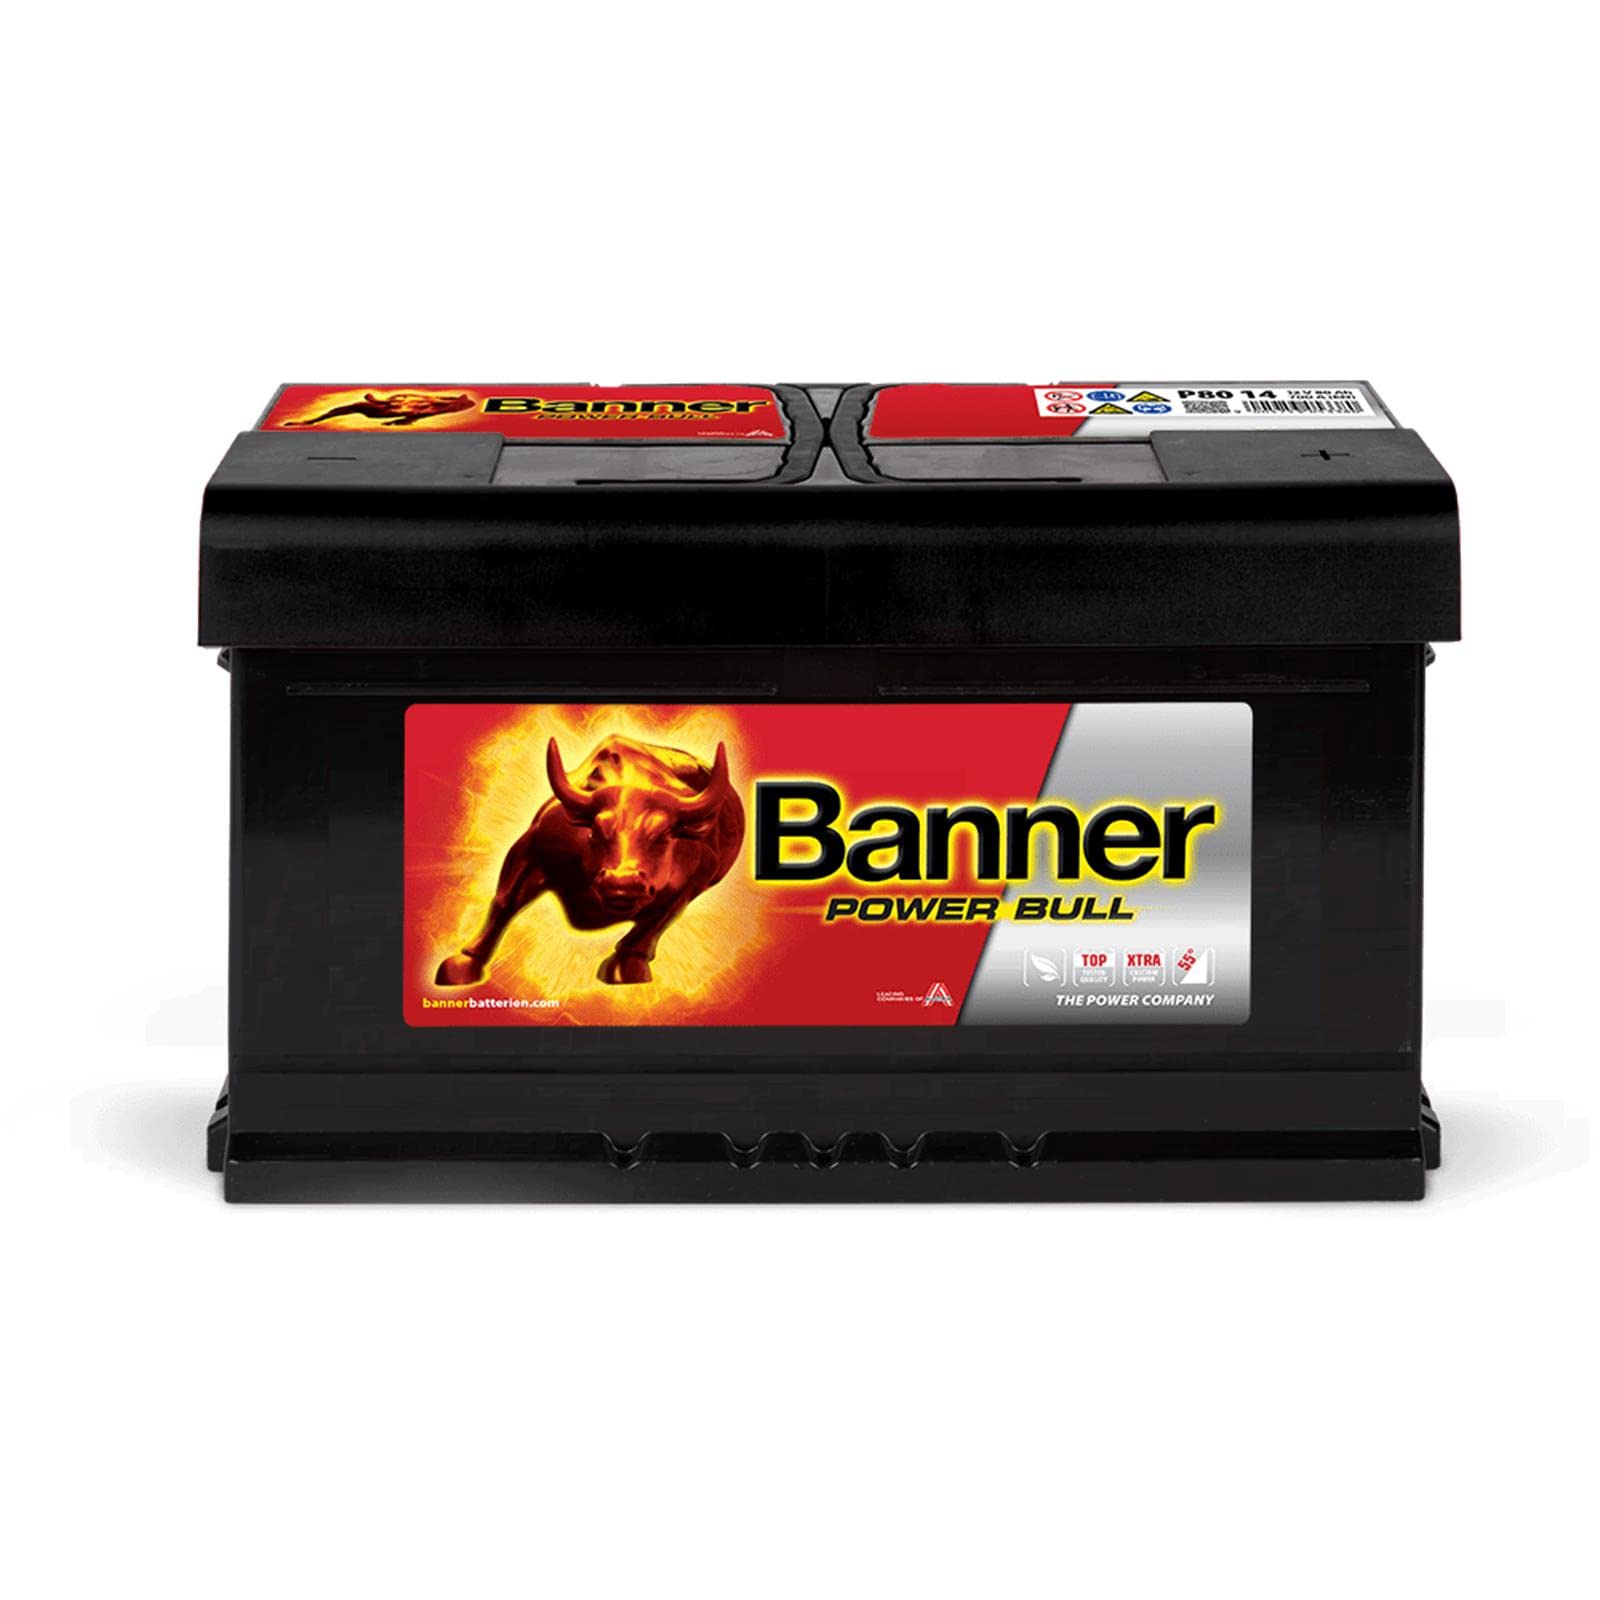 Banner P8014 Power Bull Batterie 110 Calciumtechnologie, Auslaufschutz und Rückzündsicherheit